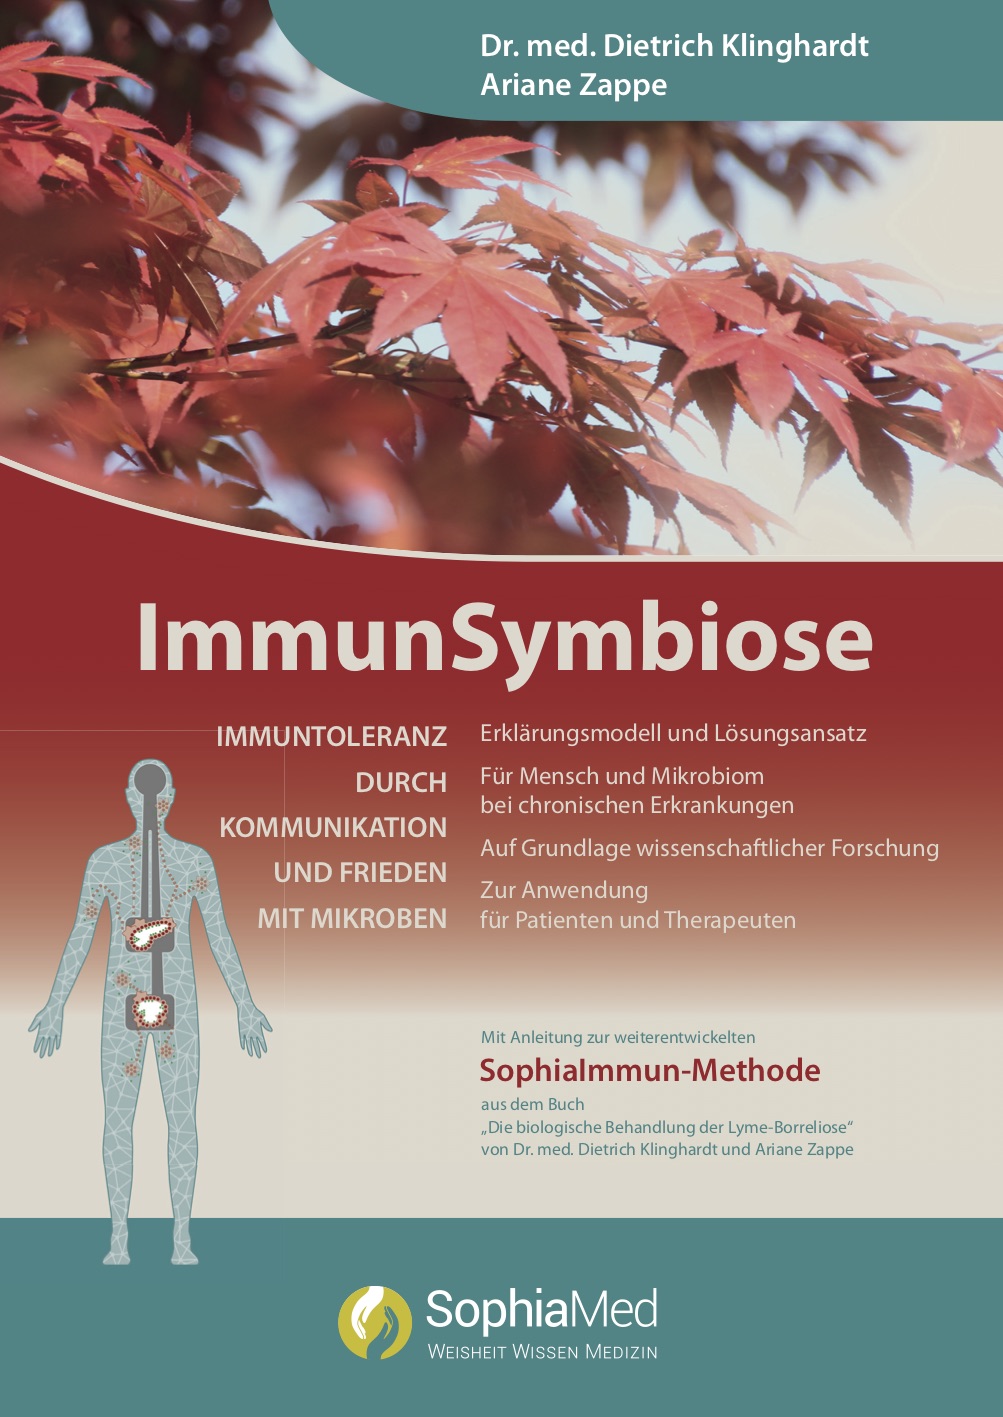 Book "ImmunSymbiose - Immuntoleranz durch Kommunikation und Frieden mit Mikroben"